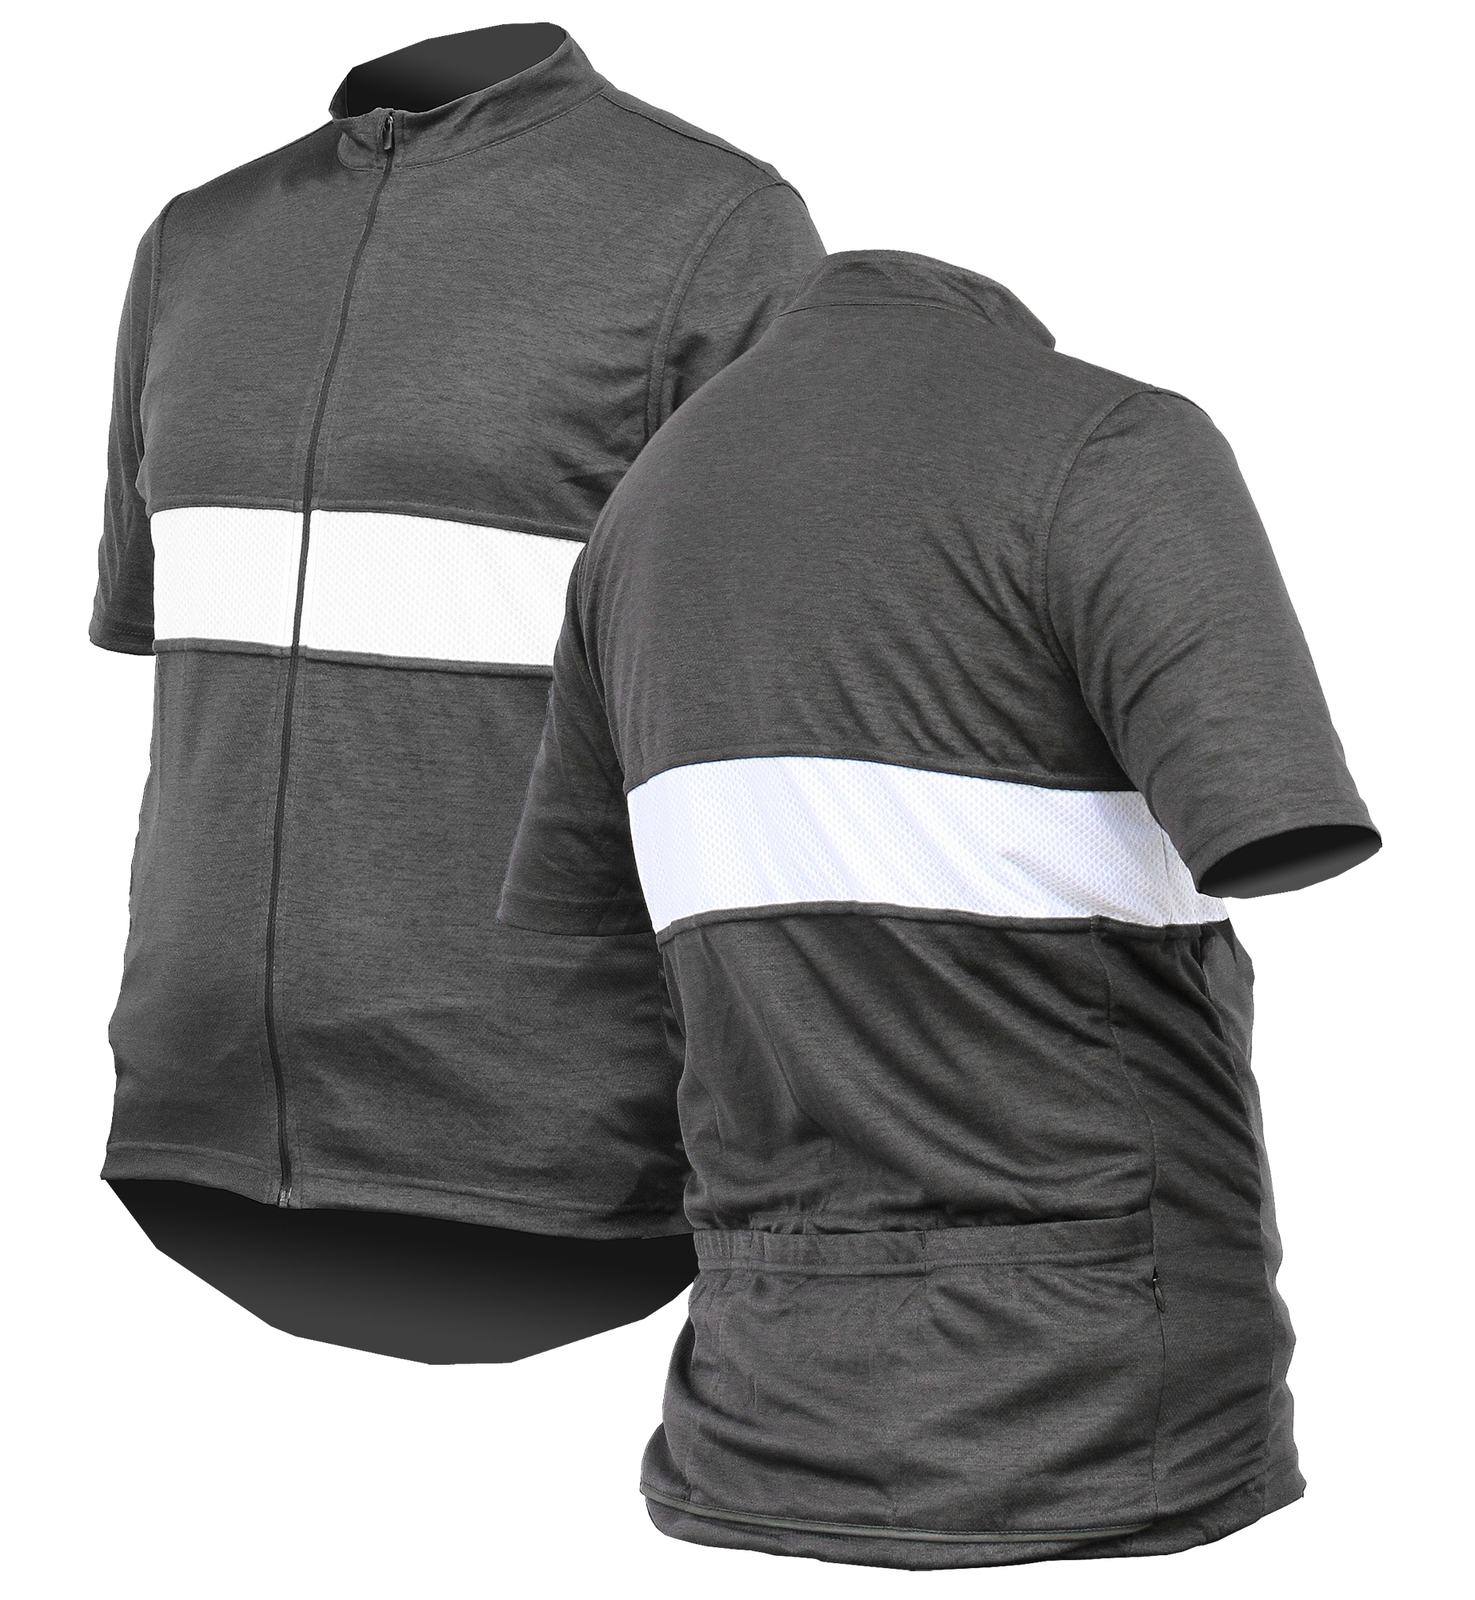 Jackbroad Premium Quality Cycling Jersey Grey XXXXL